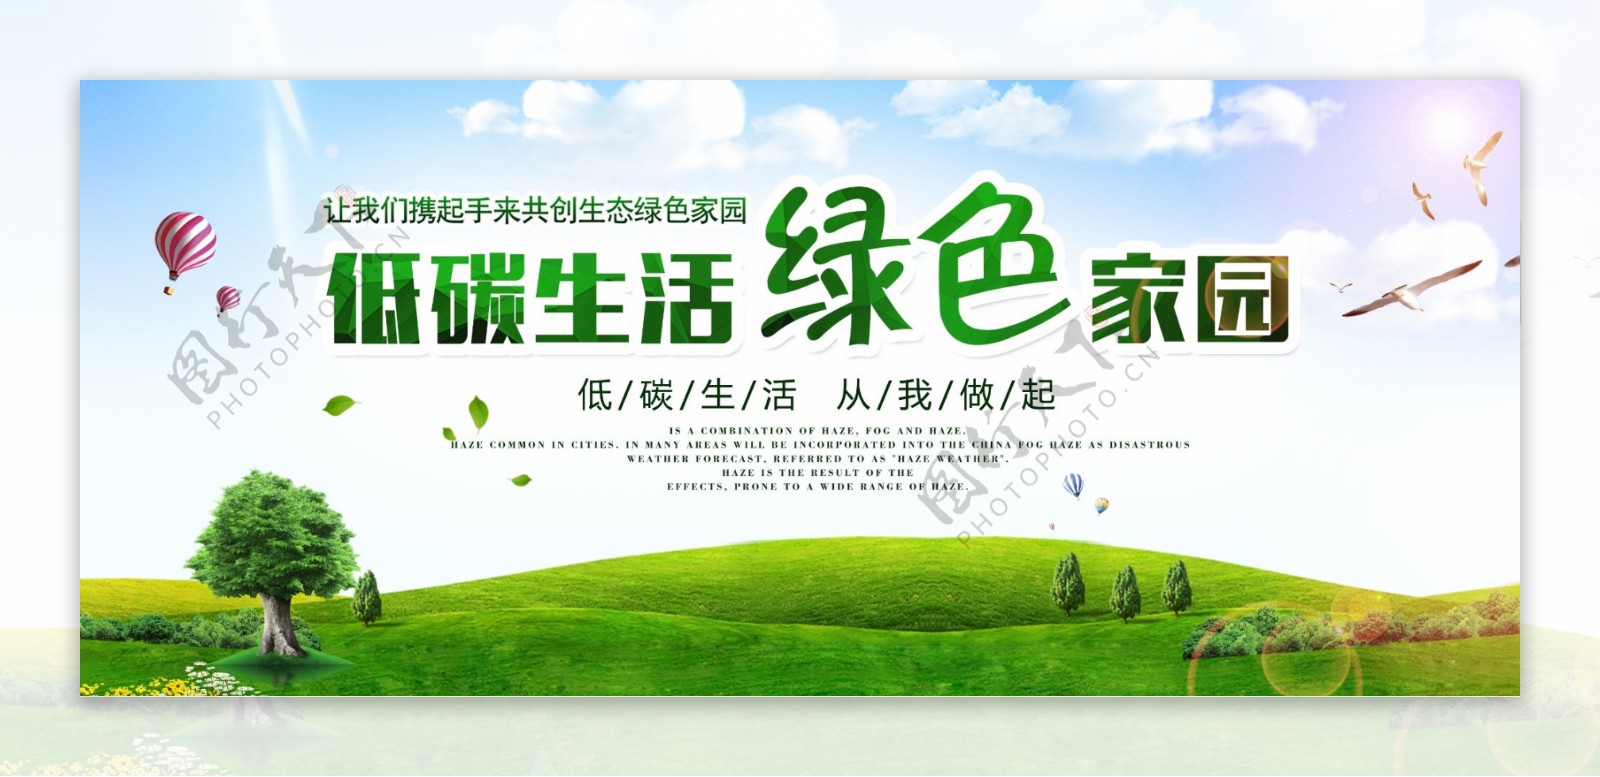 和谐社会绿色环保宣传海报素材图片